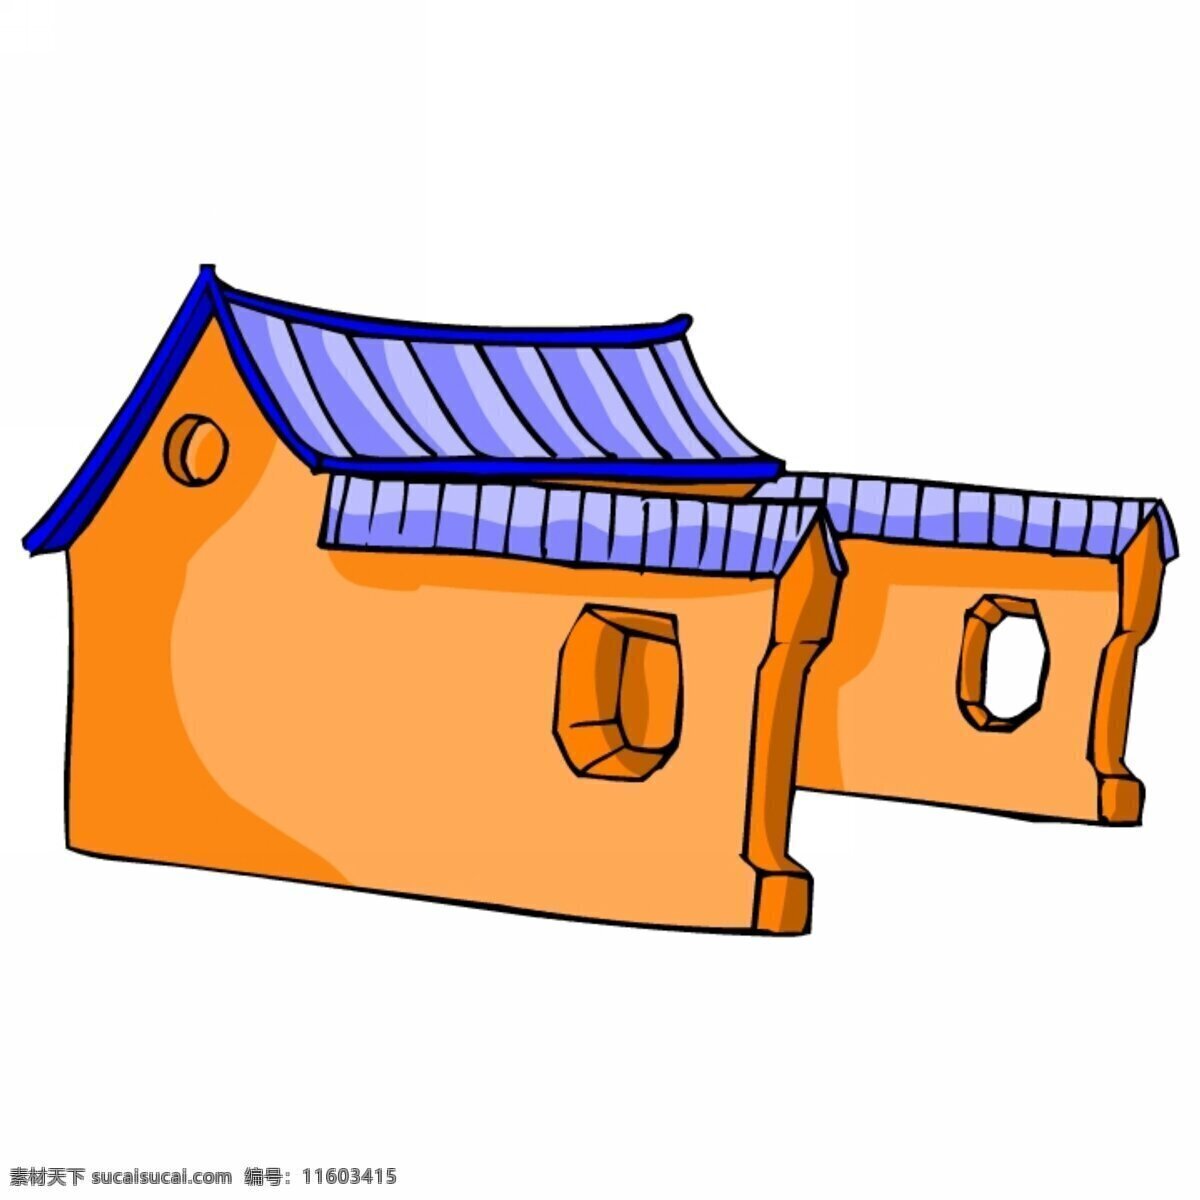 中式建筑 中国 中式 古代 古典 围墙 动漫动画